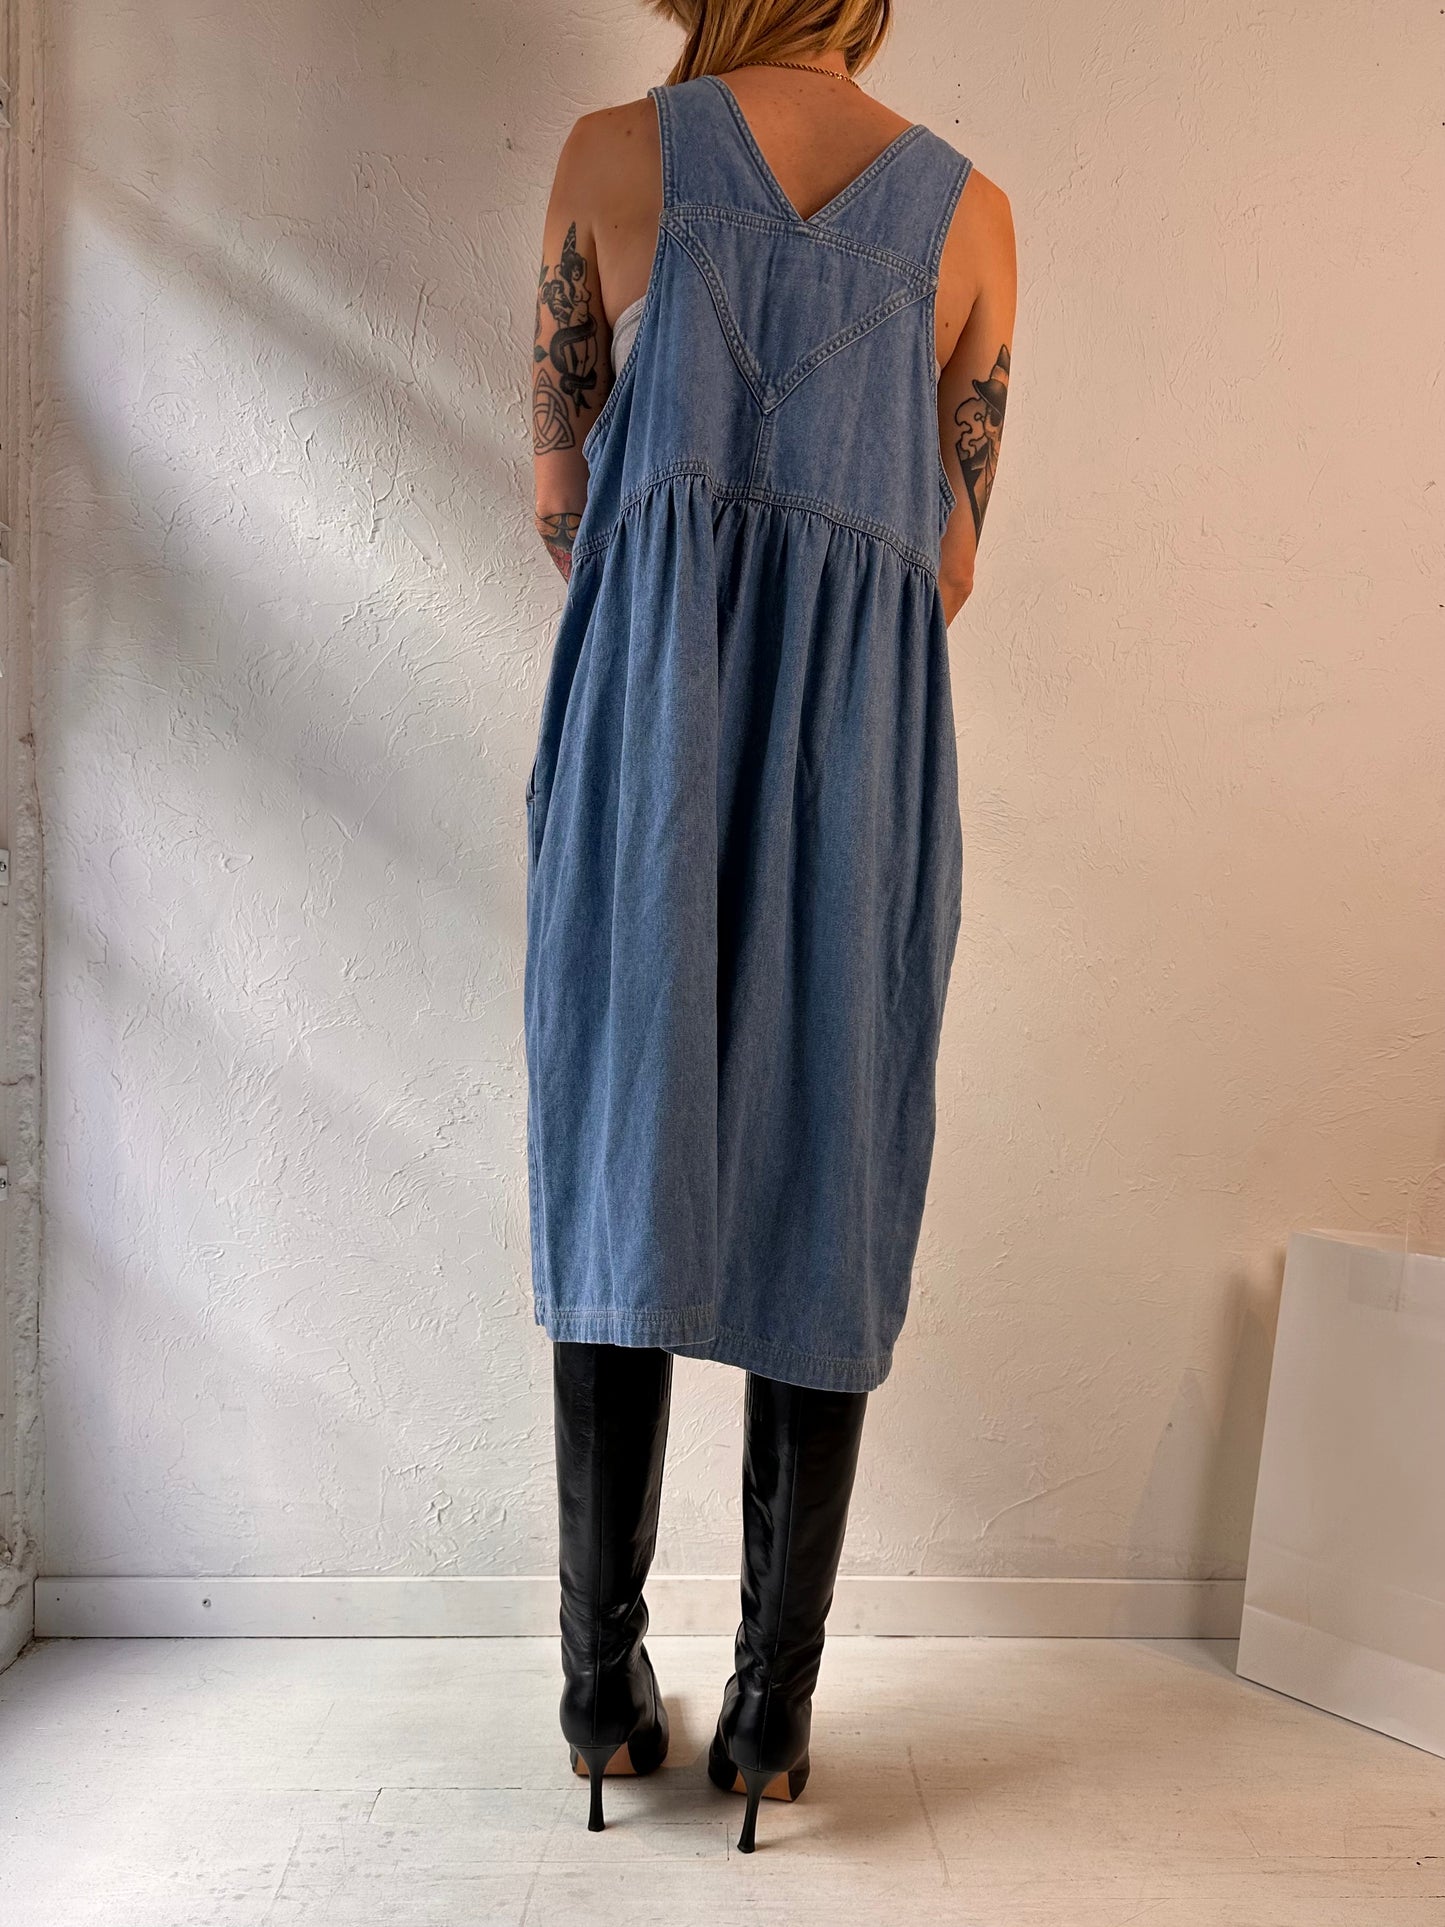 90s 'Sigrid Olsen' Denim Dress / Large